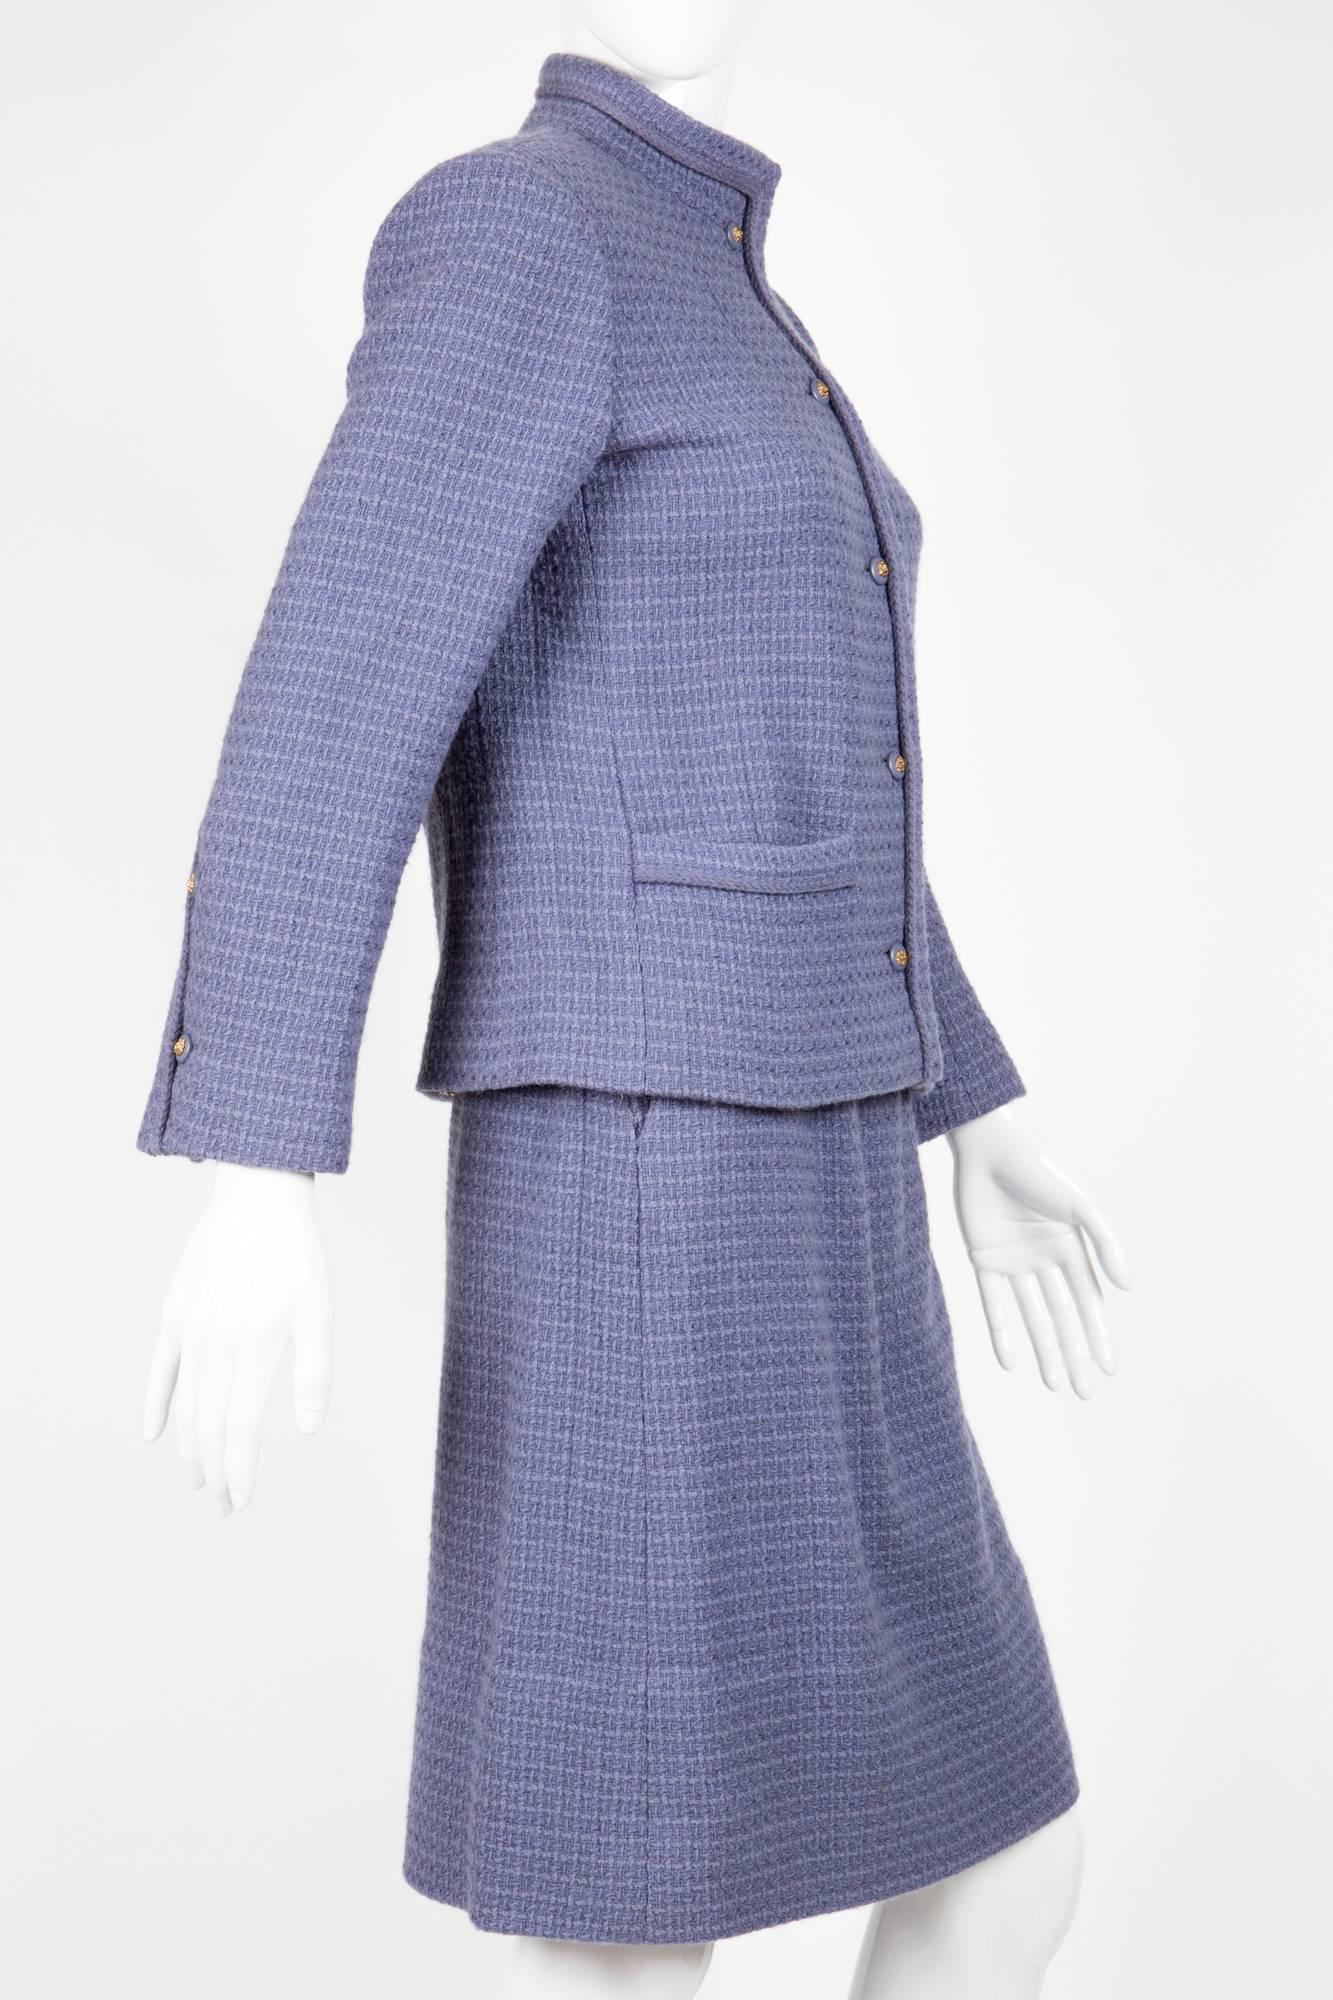 Purple 1970s Iconic Parme Boucle Chanel Skirt Suit